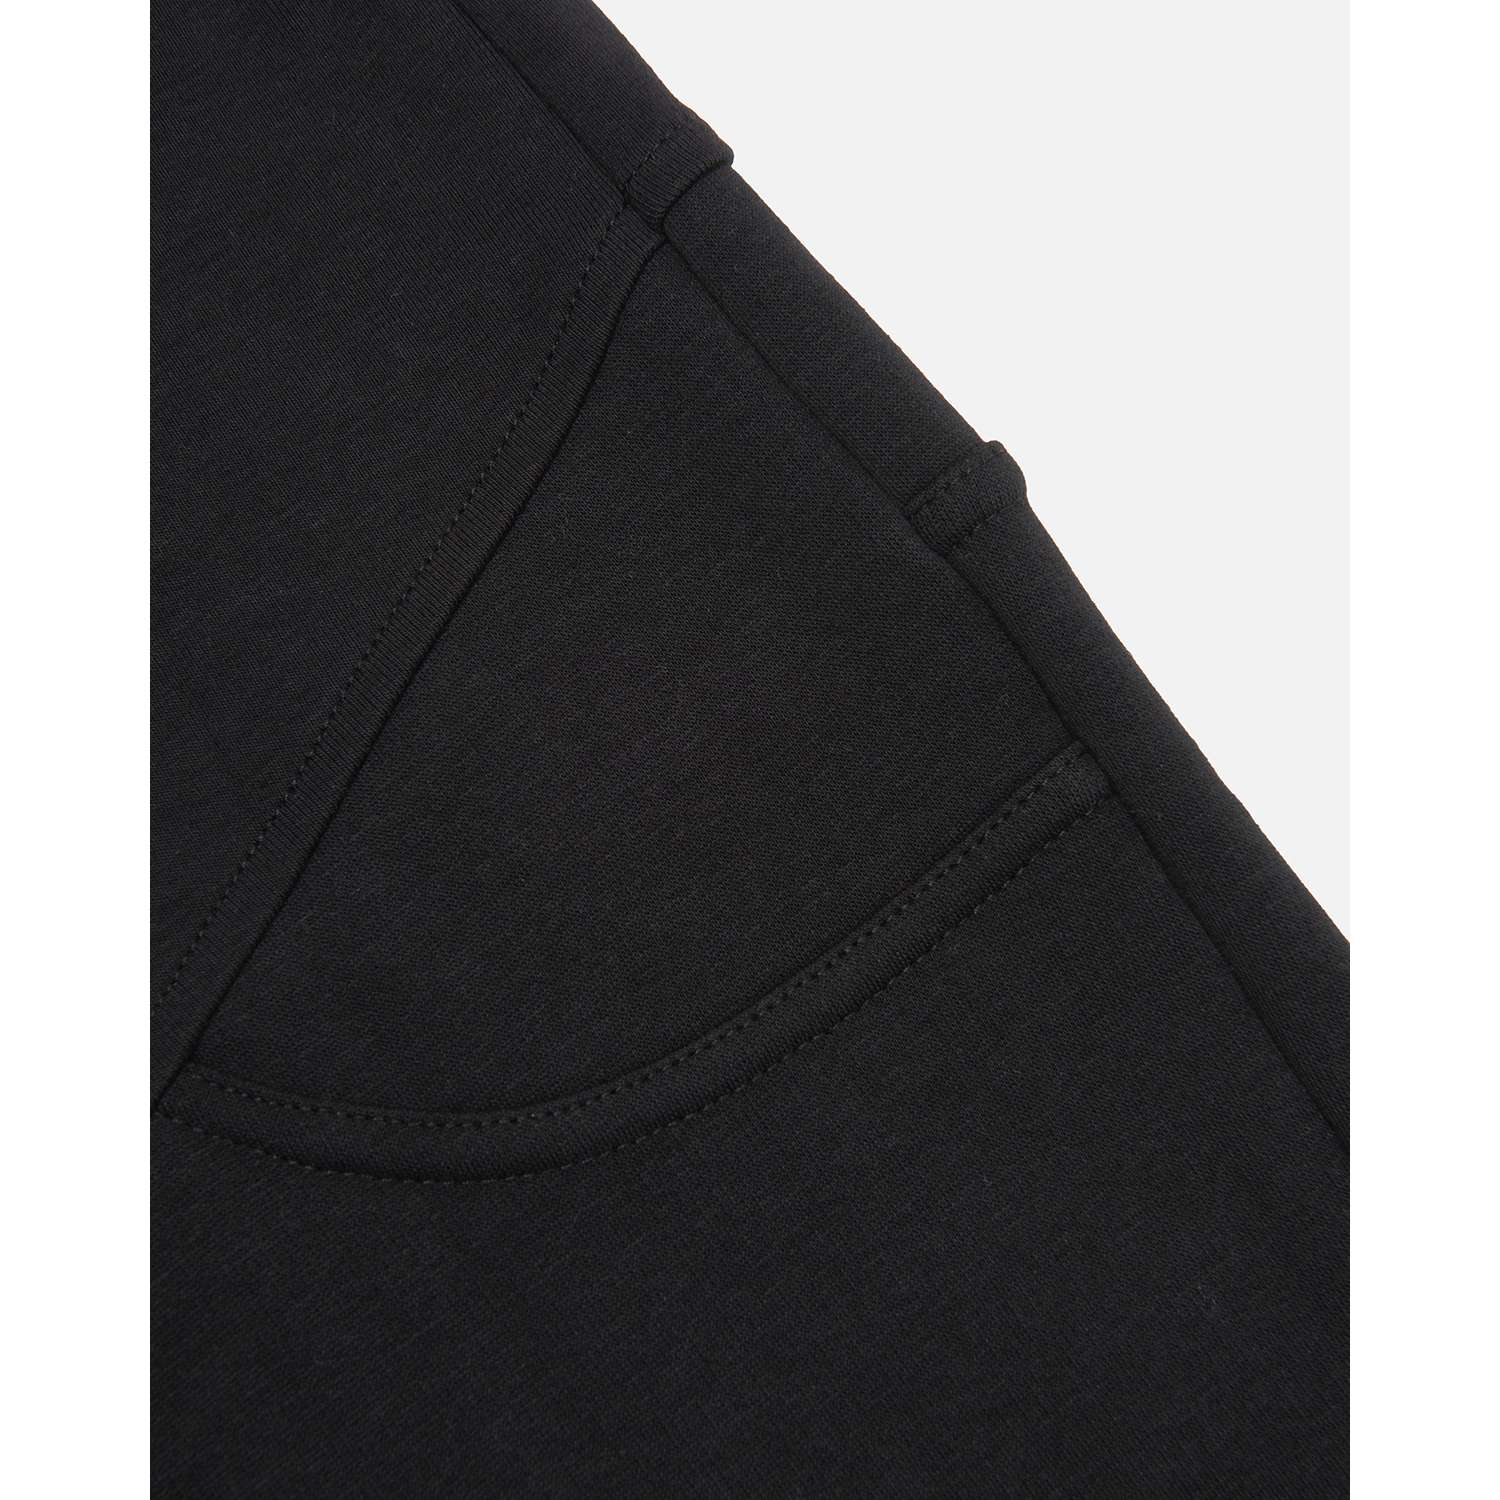 Утеплённые брюки для беременных Futurino Mama W22FM6-01-mat-99 - фото 5